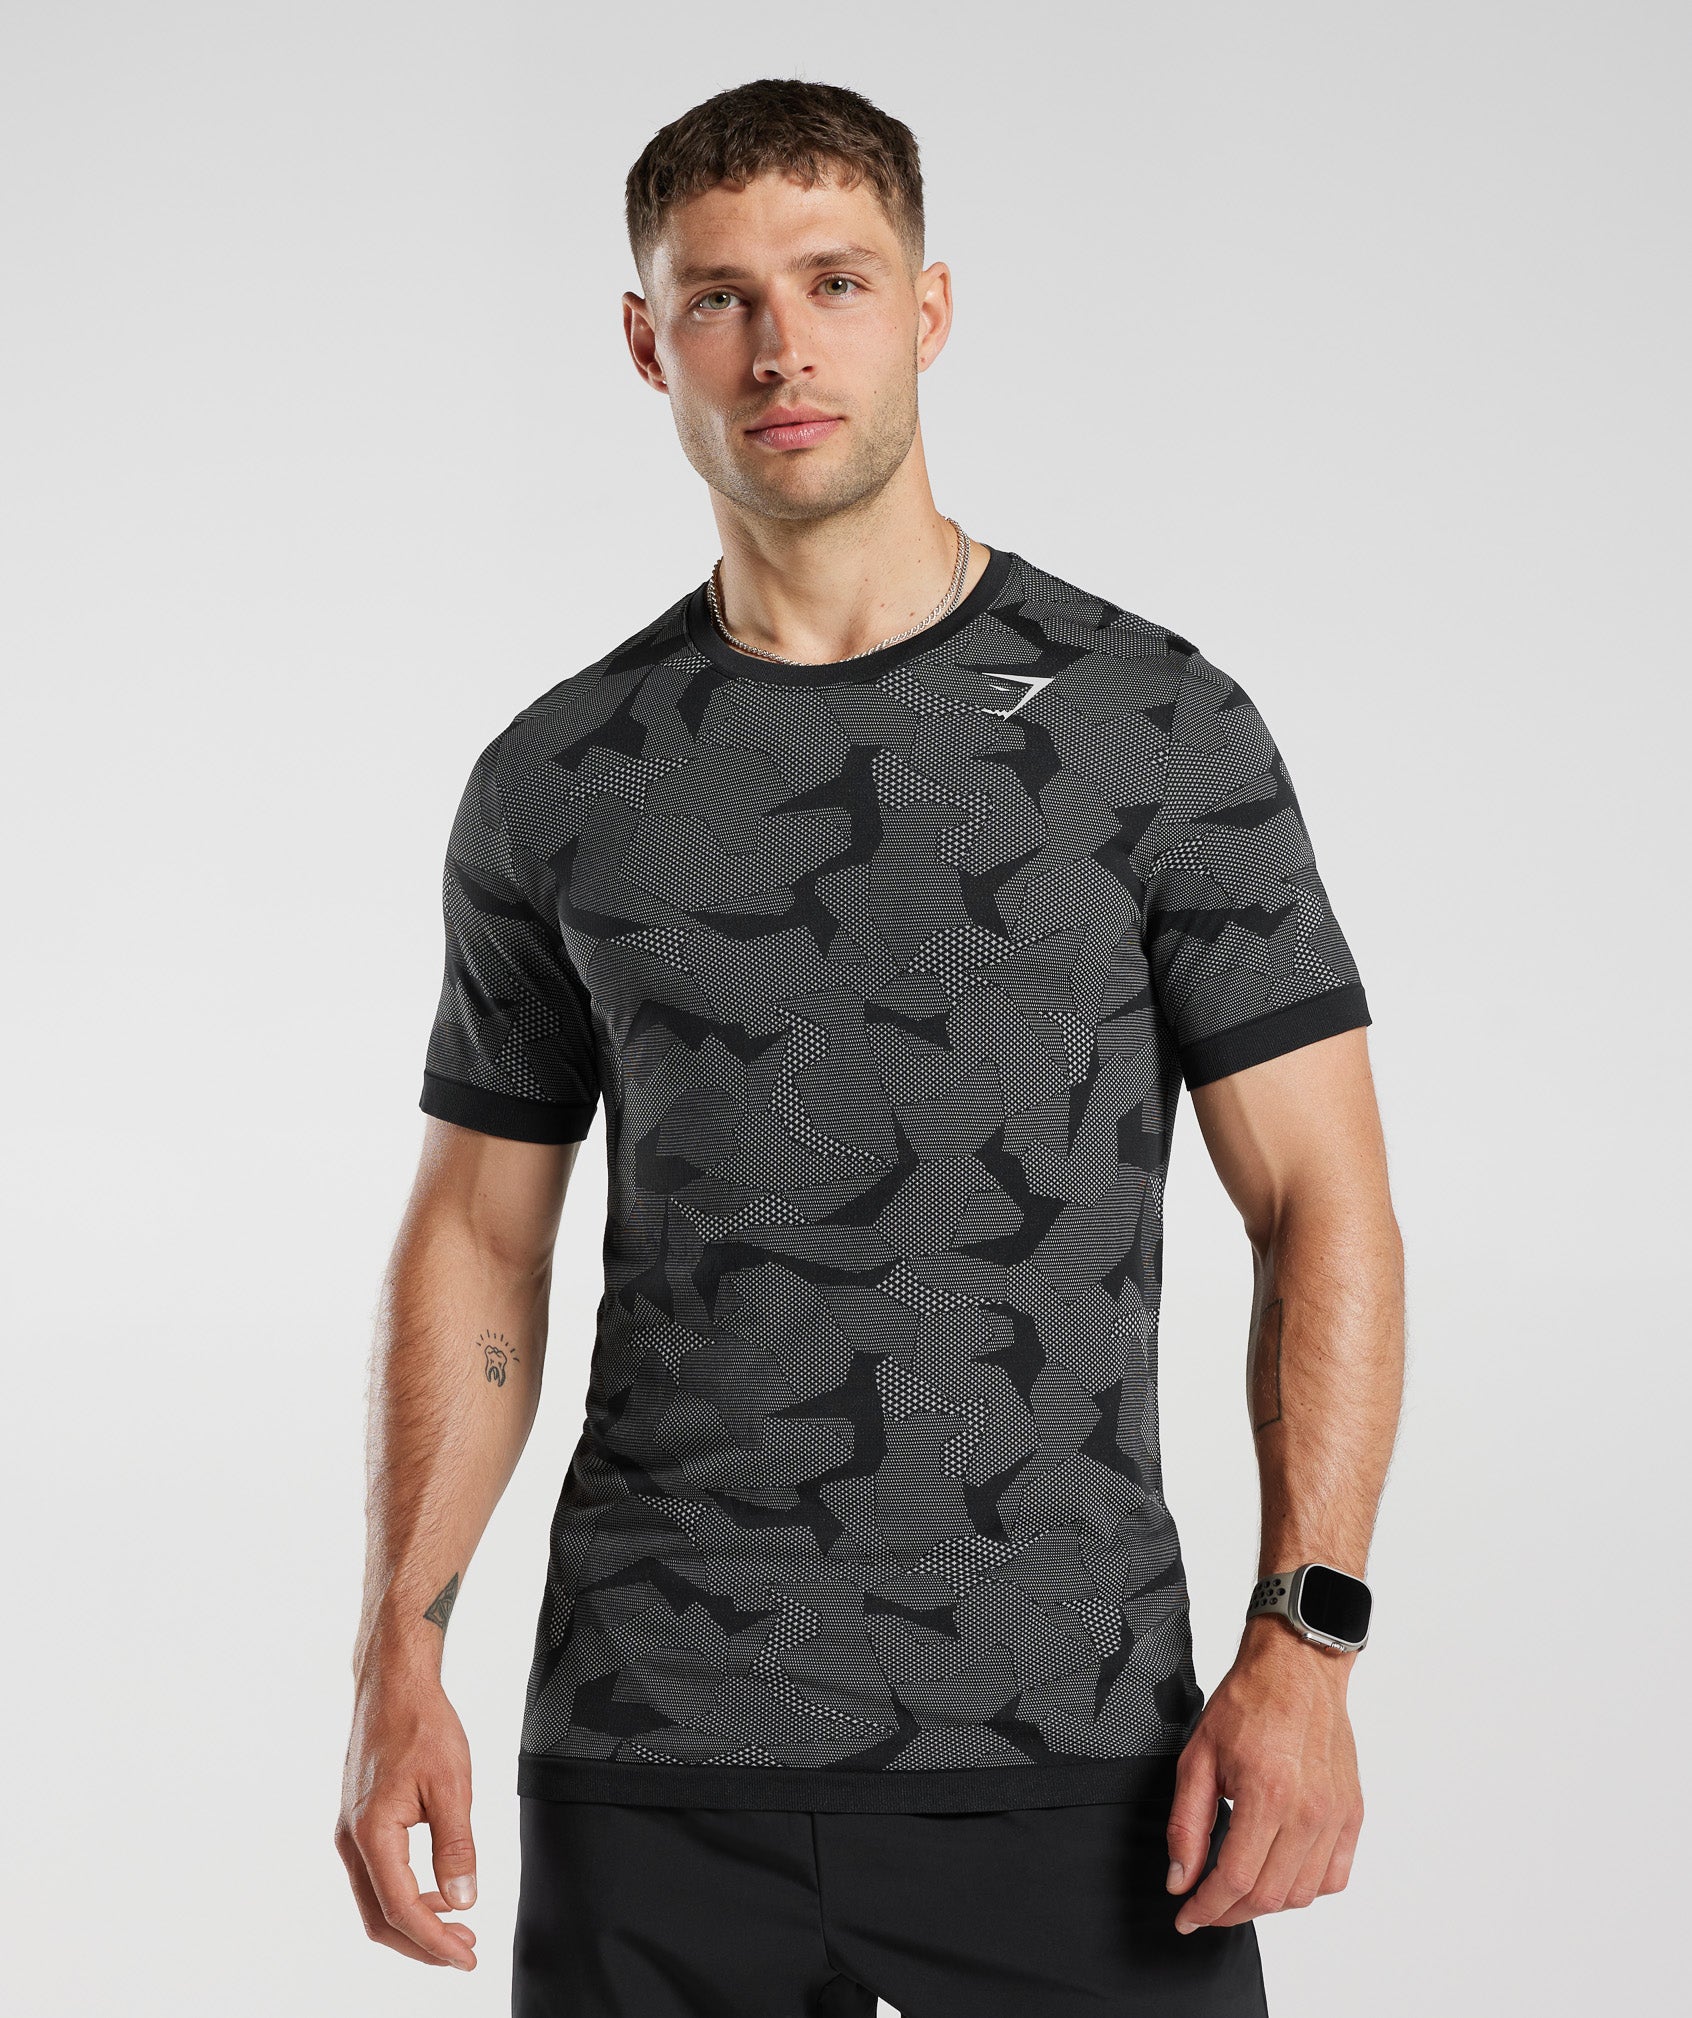 Gymshark Sport Seamless T-Shirt - Fossil Brown/Black